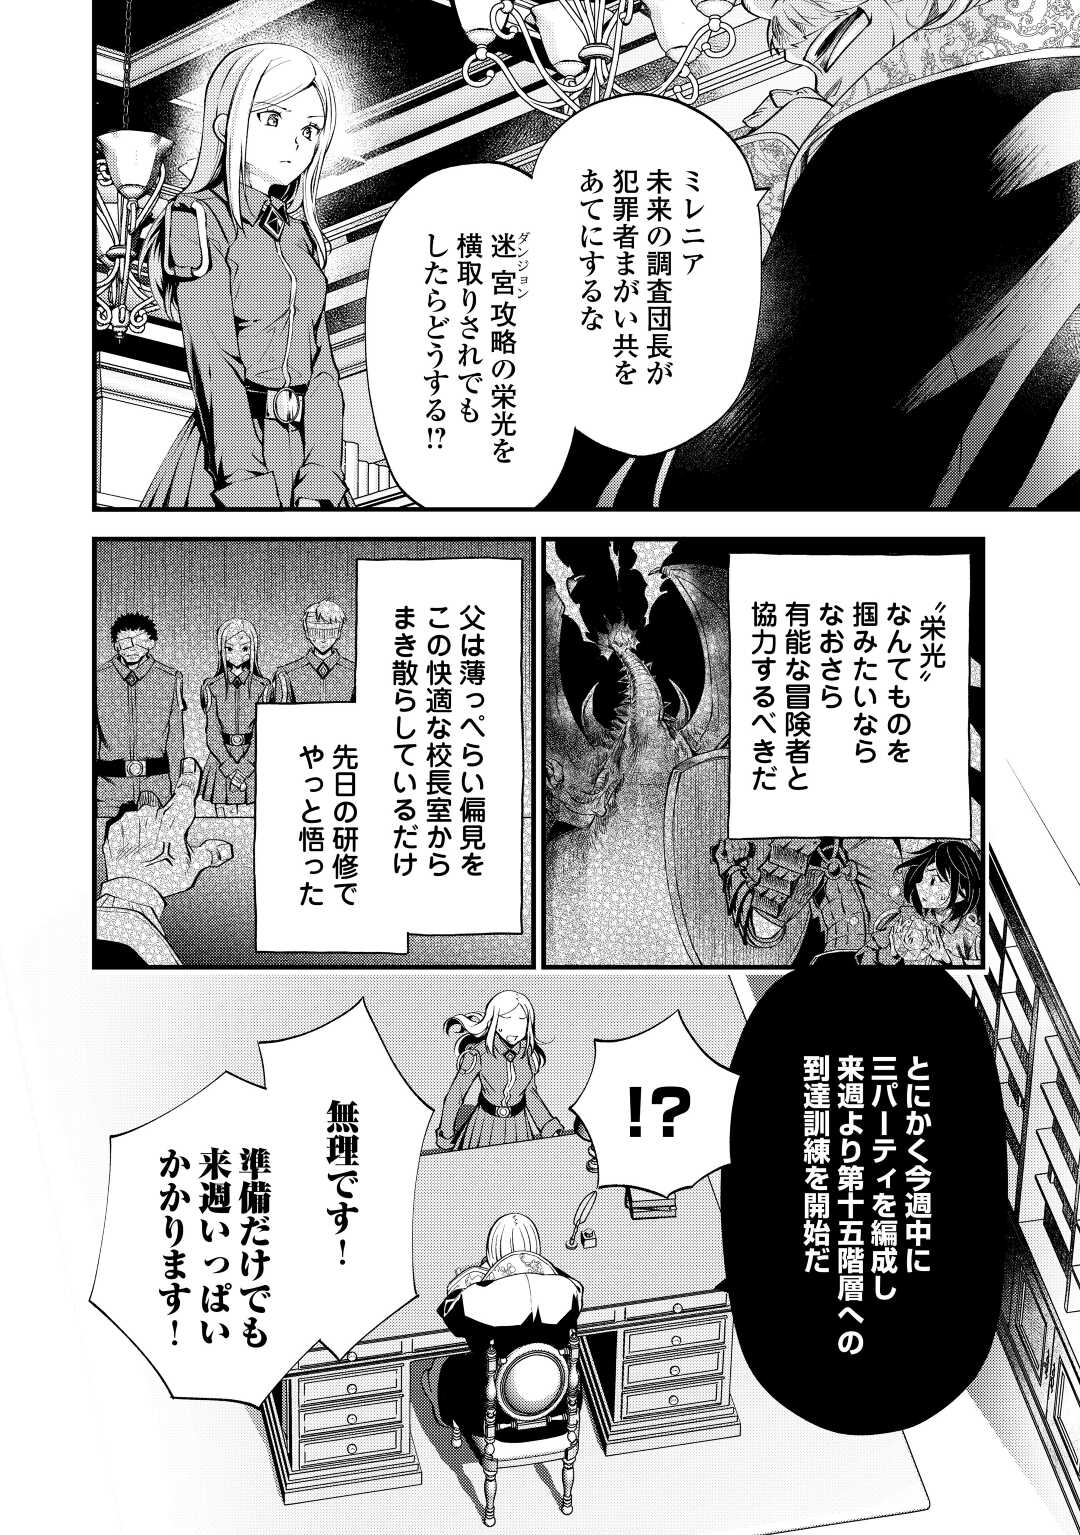 Ochikobore 1 Mahou Tsukai wa, Kyou mo Muishiki ni Cheat o Tsukau - Chapter 19 - Page 2